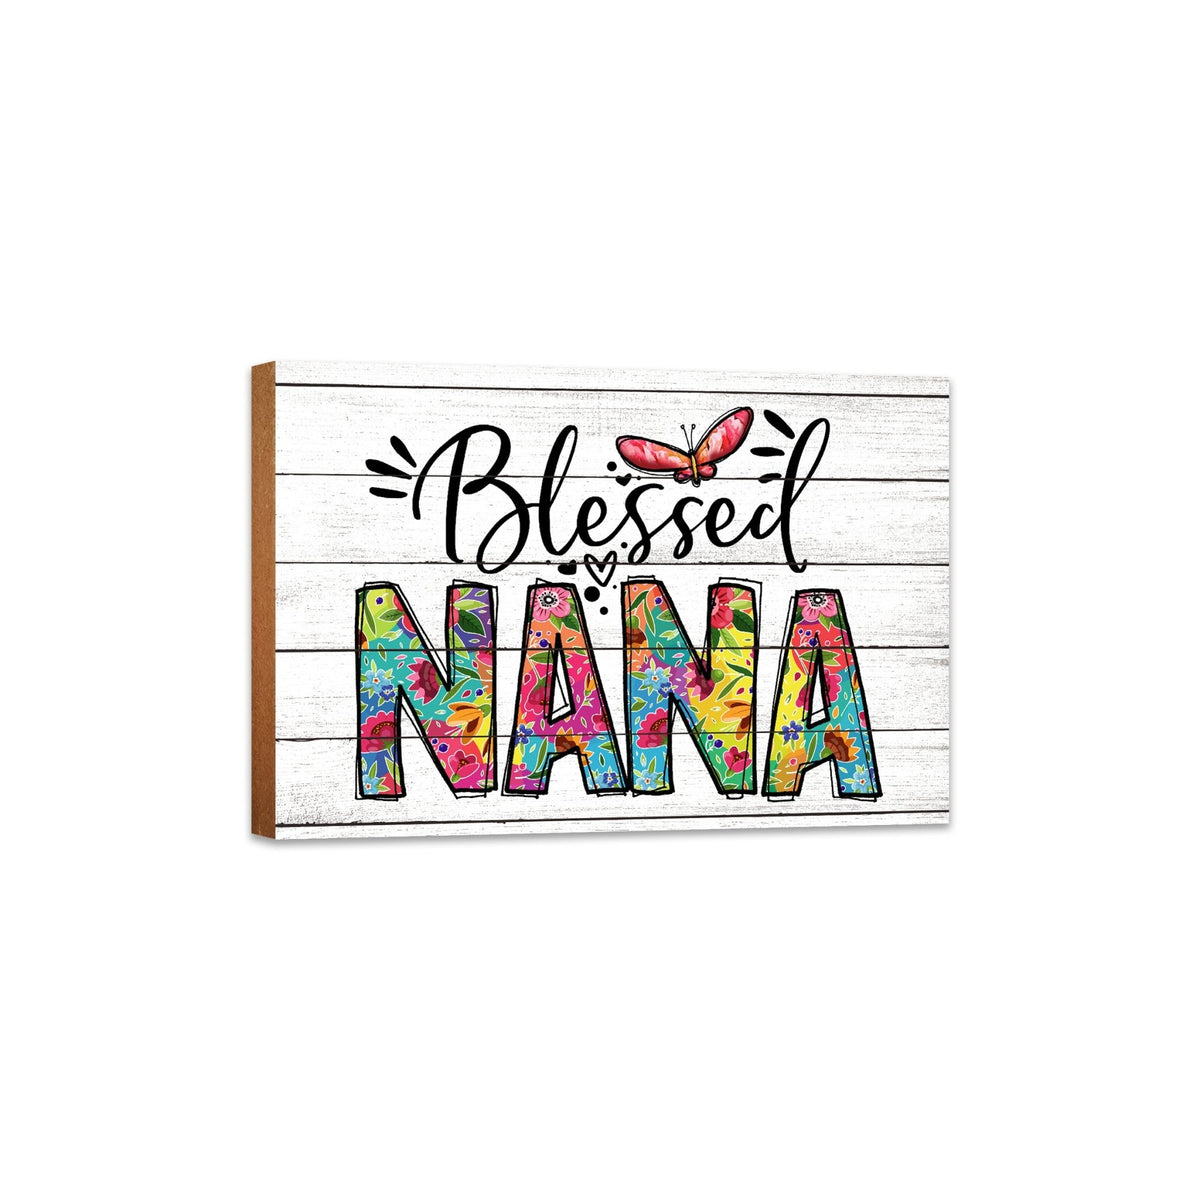 Modern-Inspired White Wooden Graffiti Art Shelf Sitter Gift Idea &amp; Home Décor - Blessed Nana - LifeSong Milestones